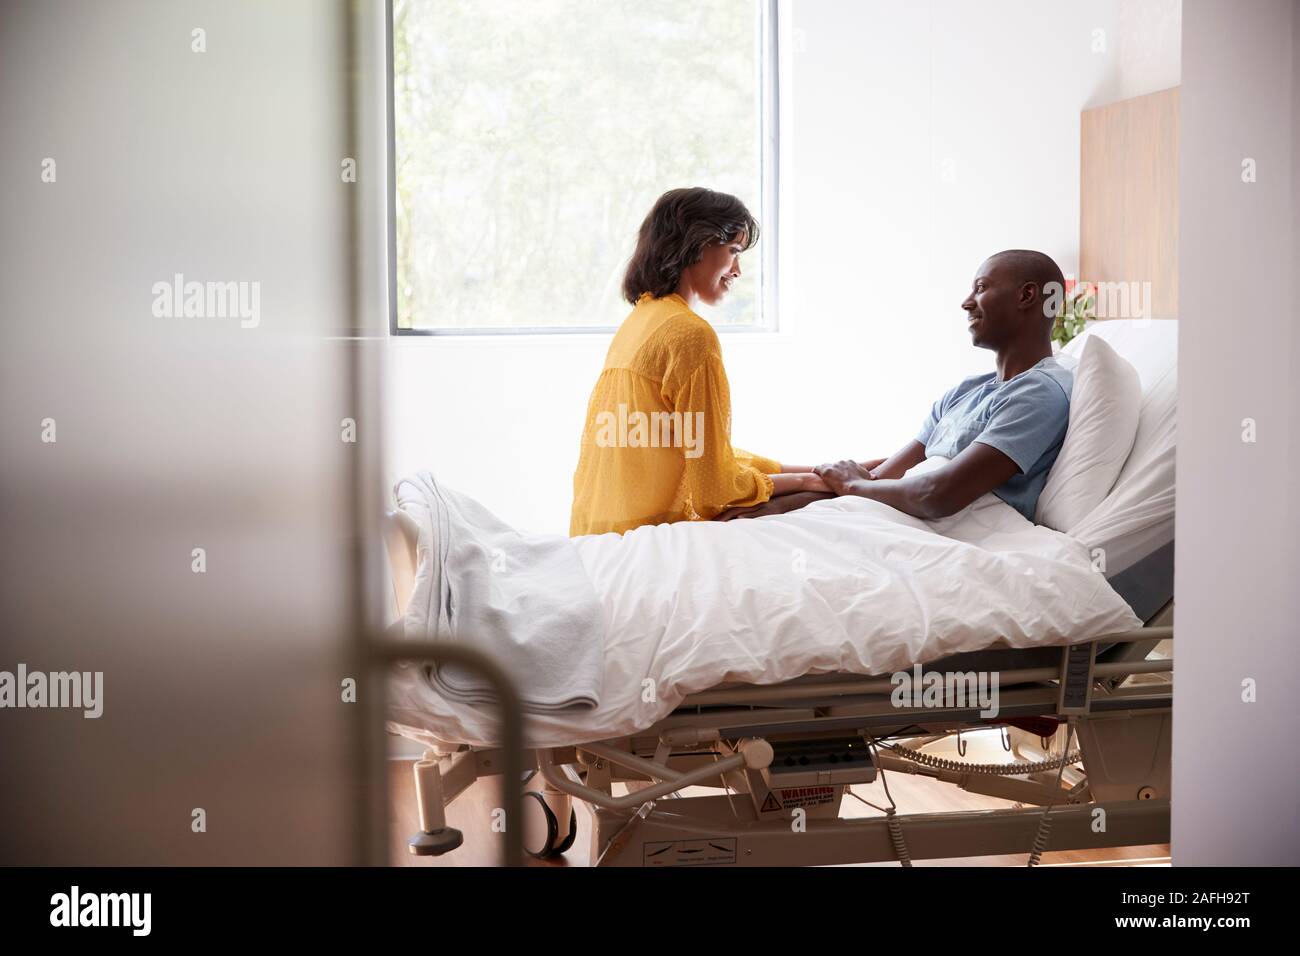 Frau besuchen und im Gespräch mit Patienten Mann im Krankenhaus Bed Stockfoto